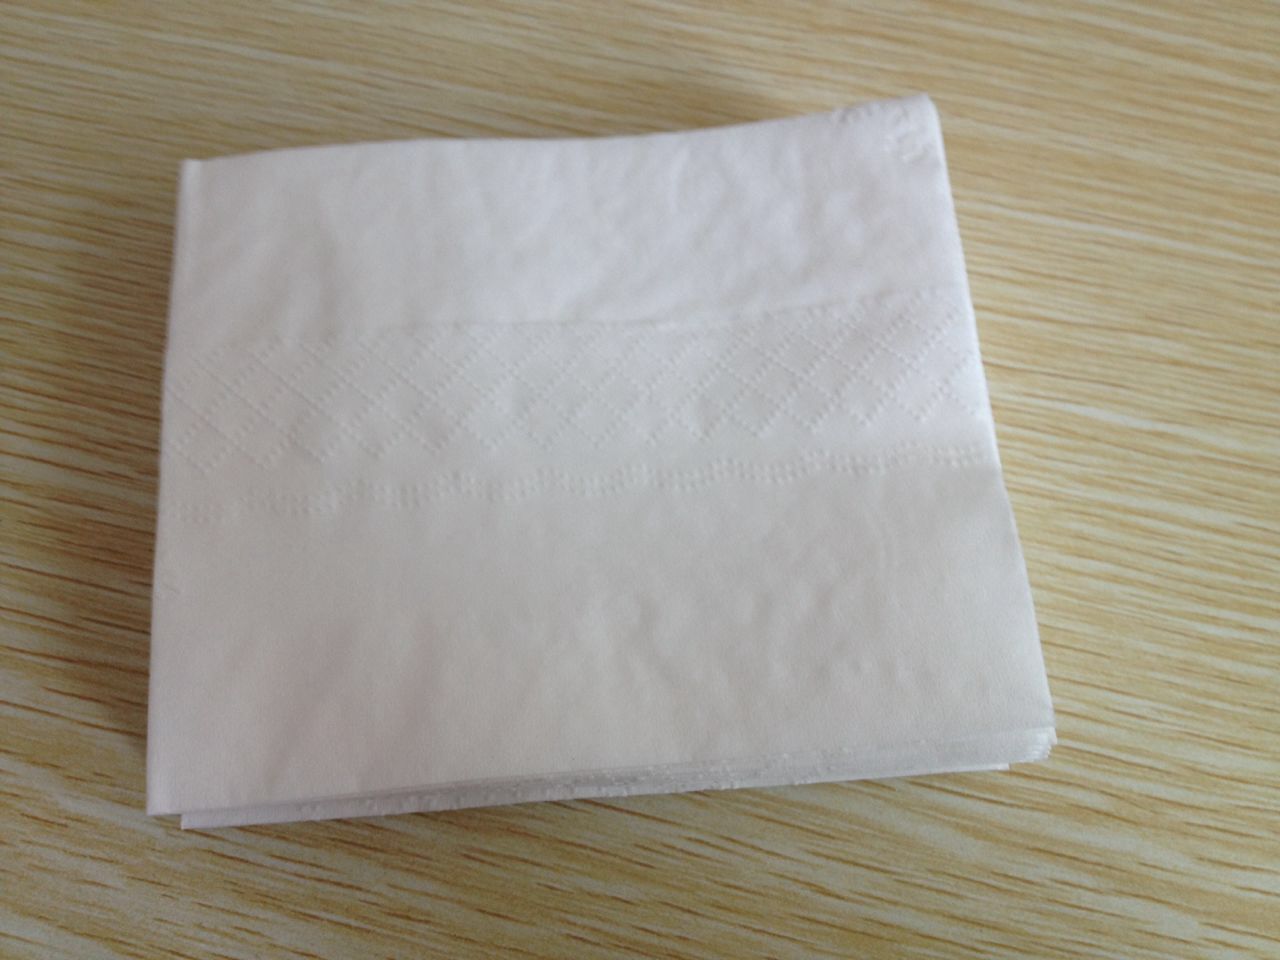 印标方巾 面巾纸 钱夹纸 湿巾厂家供应印标方巾 面巾纸 钱夹纸 湿巾